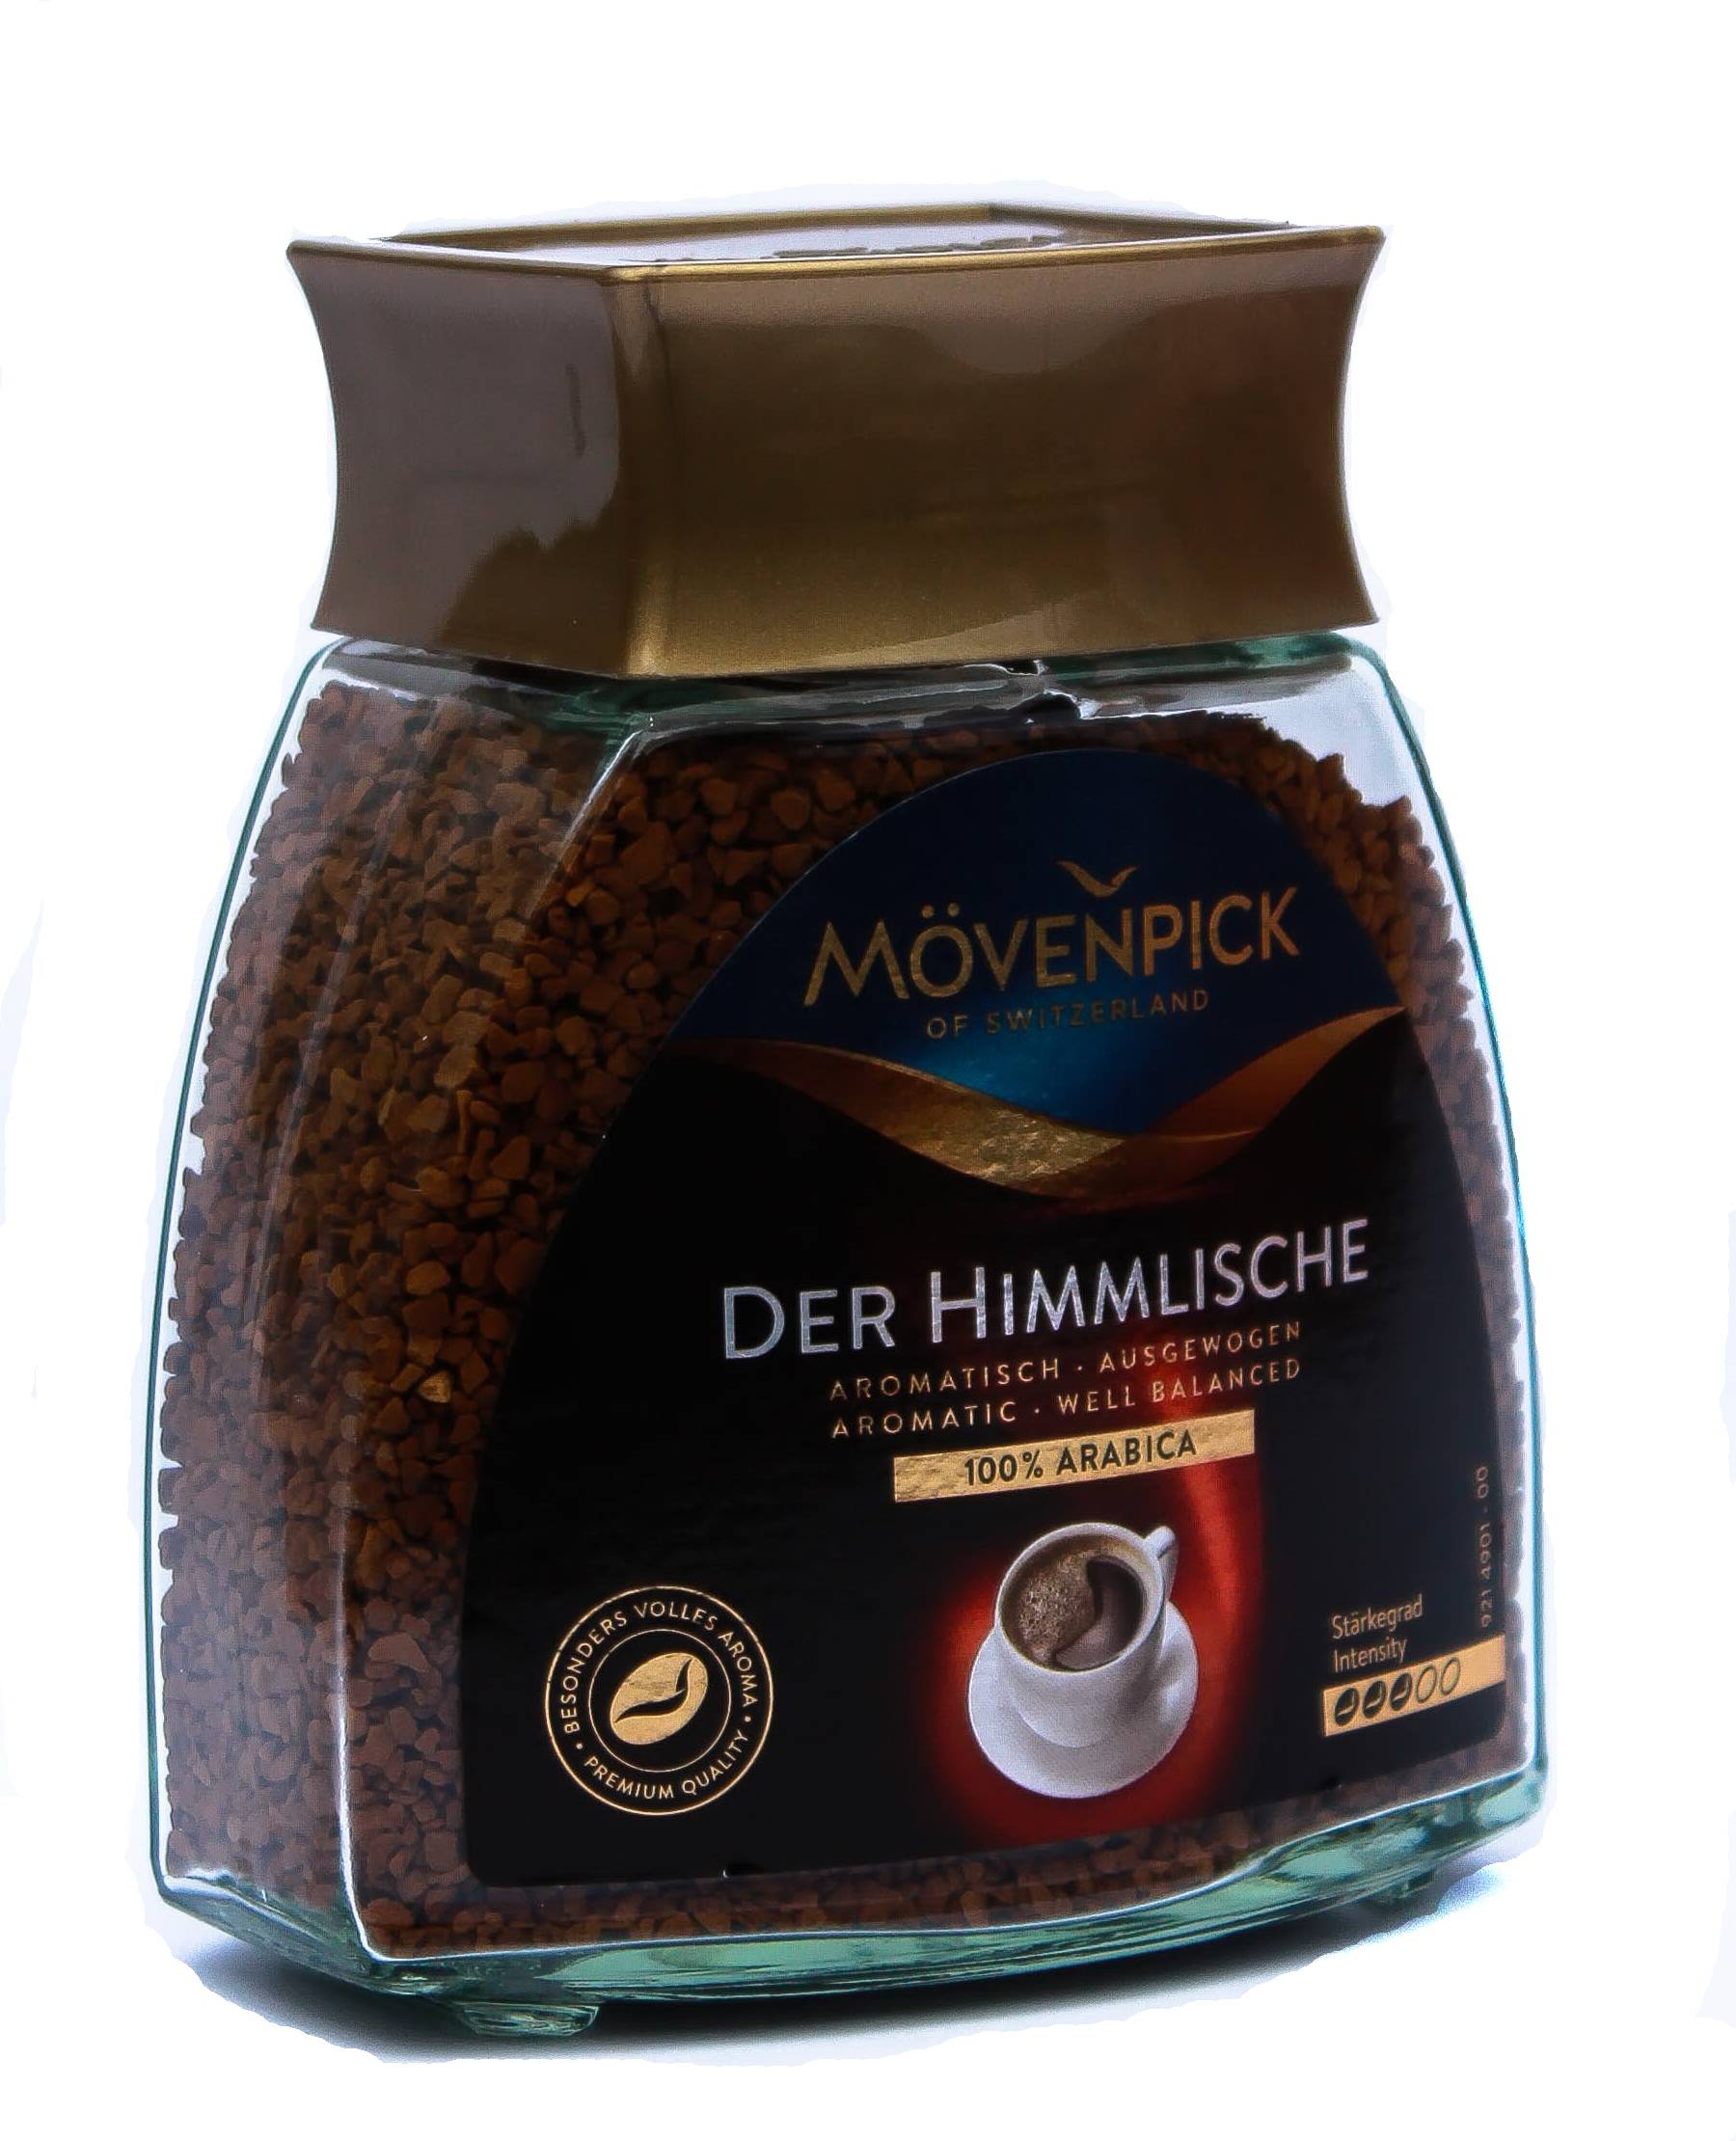 Кофе в зернах movenpick der himmlische 500 г — цена, купить в москве